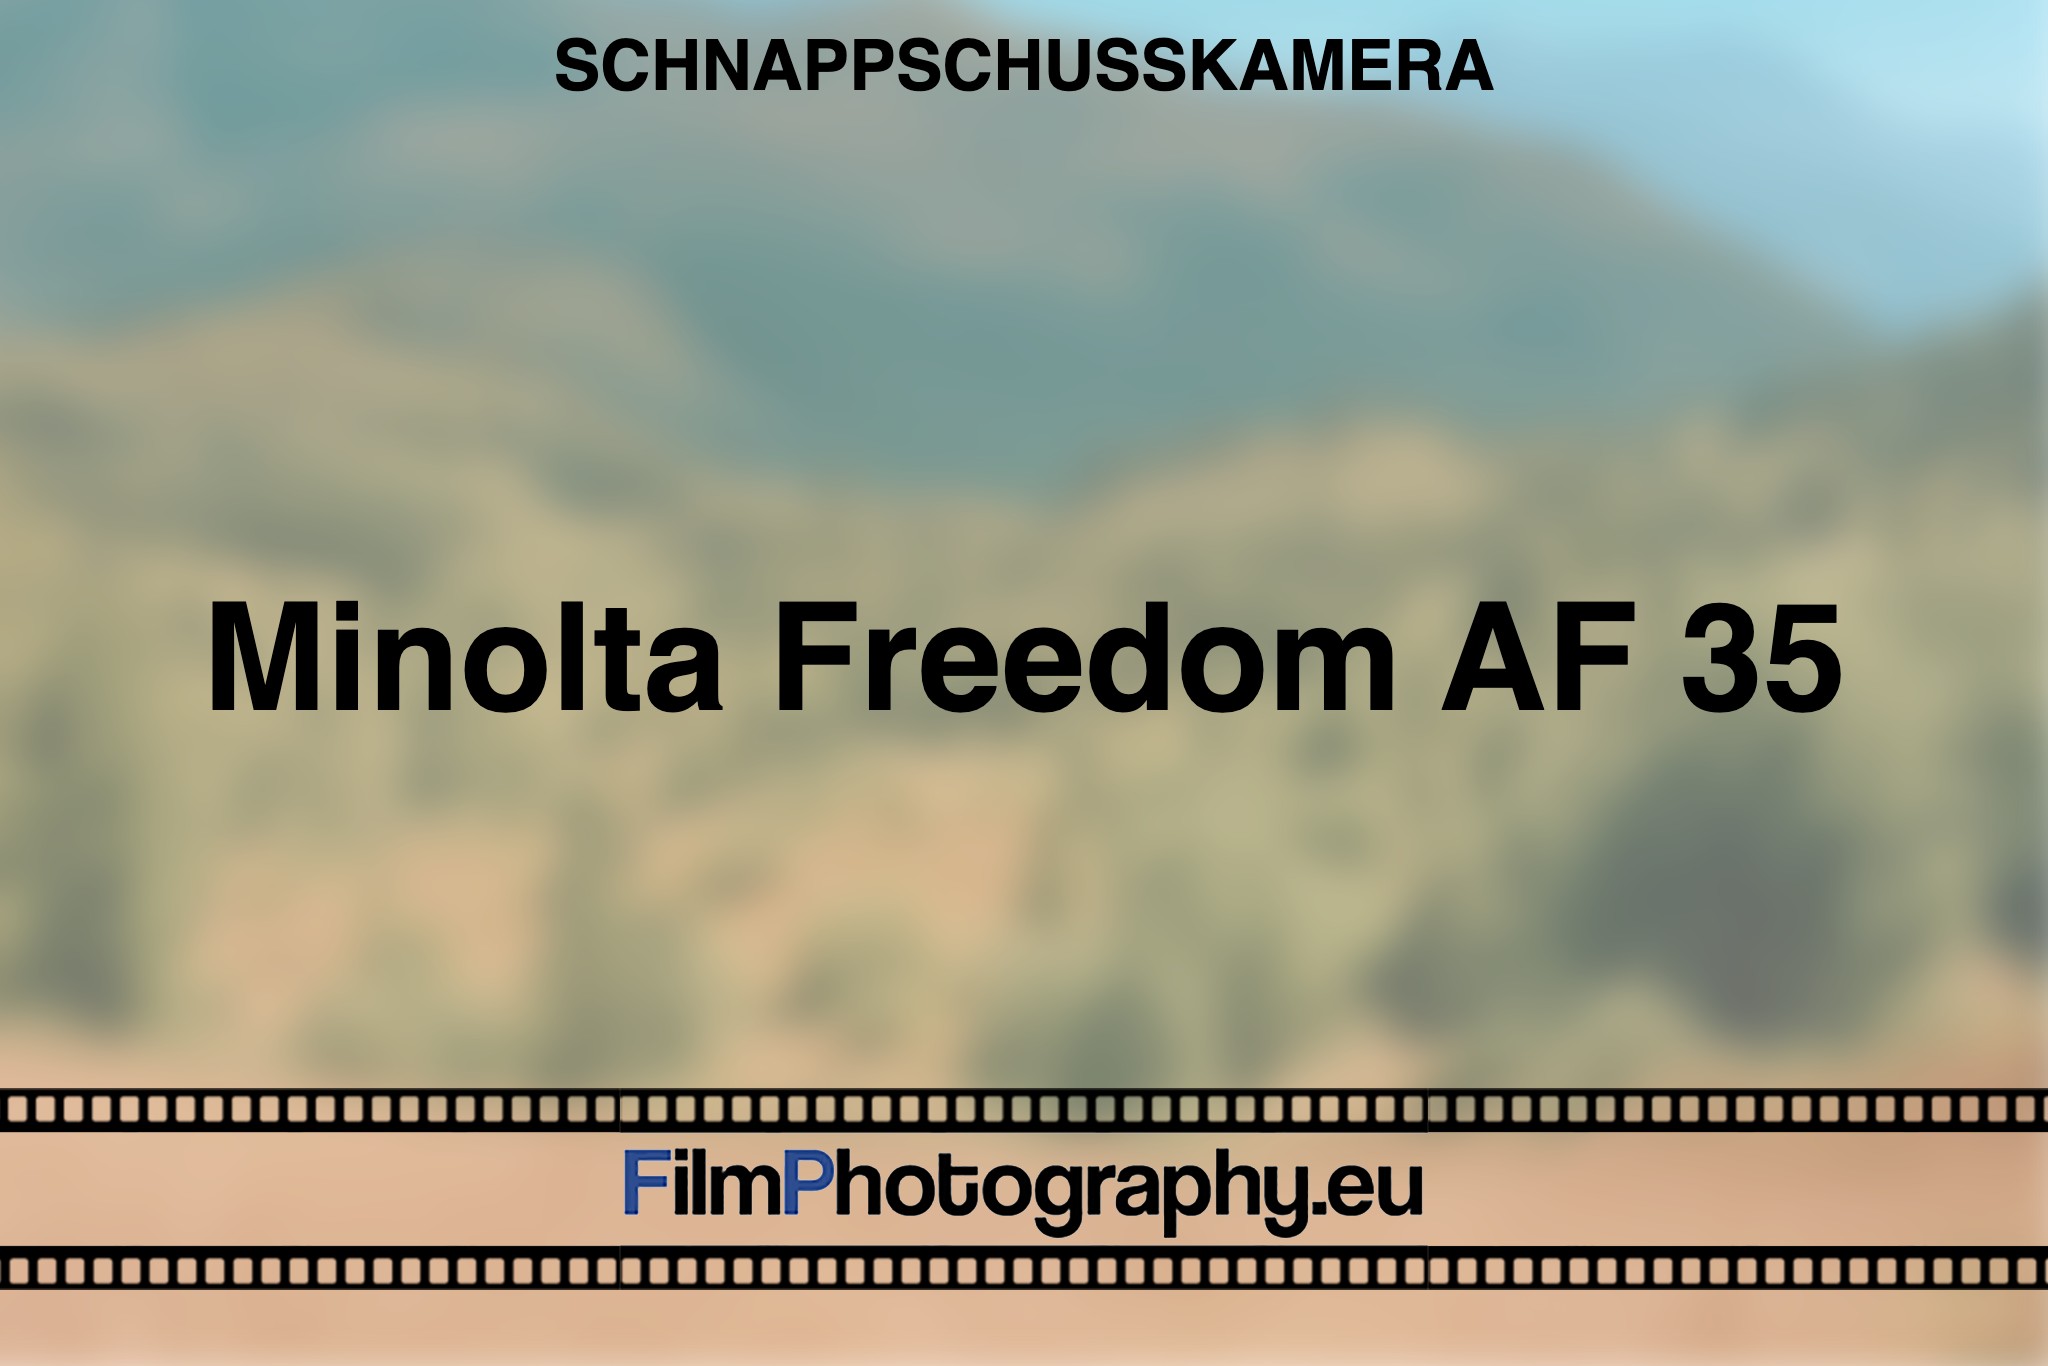 minolta-freedom-af-35-schnappschusskamera-bnv